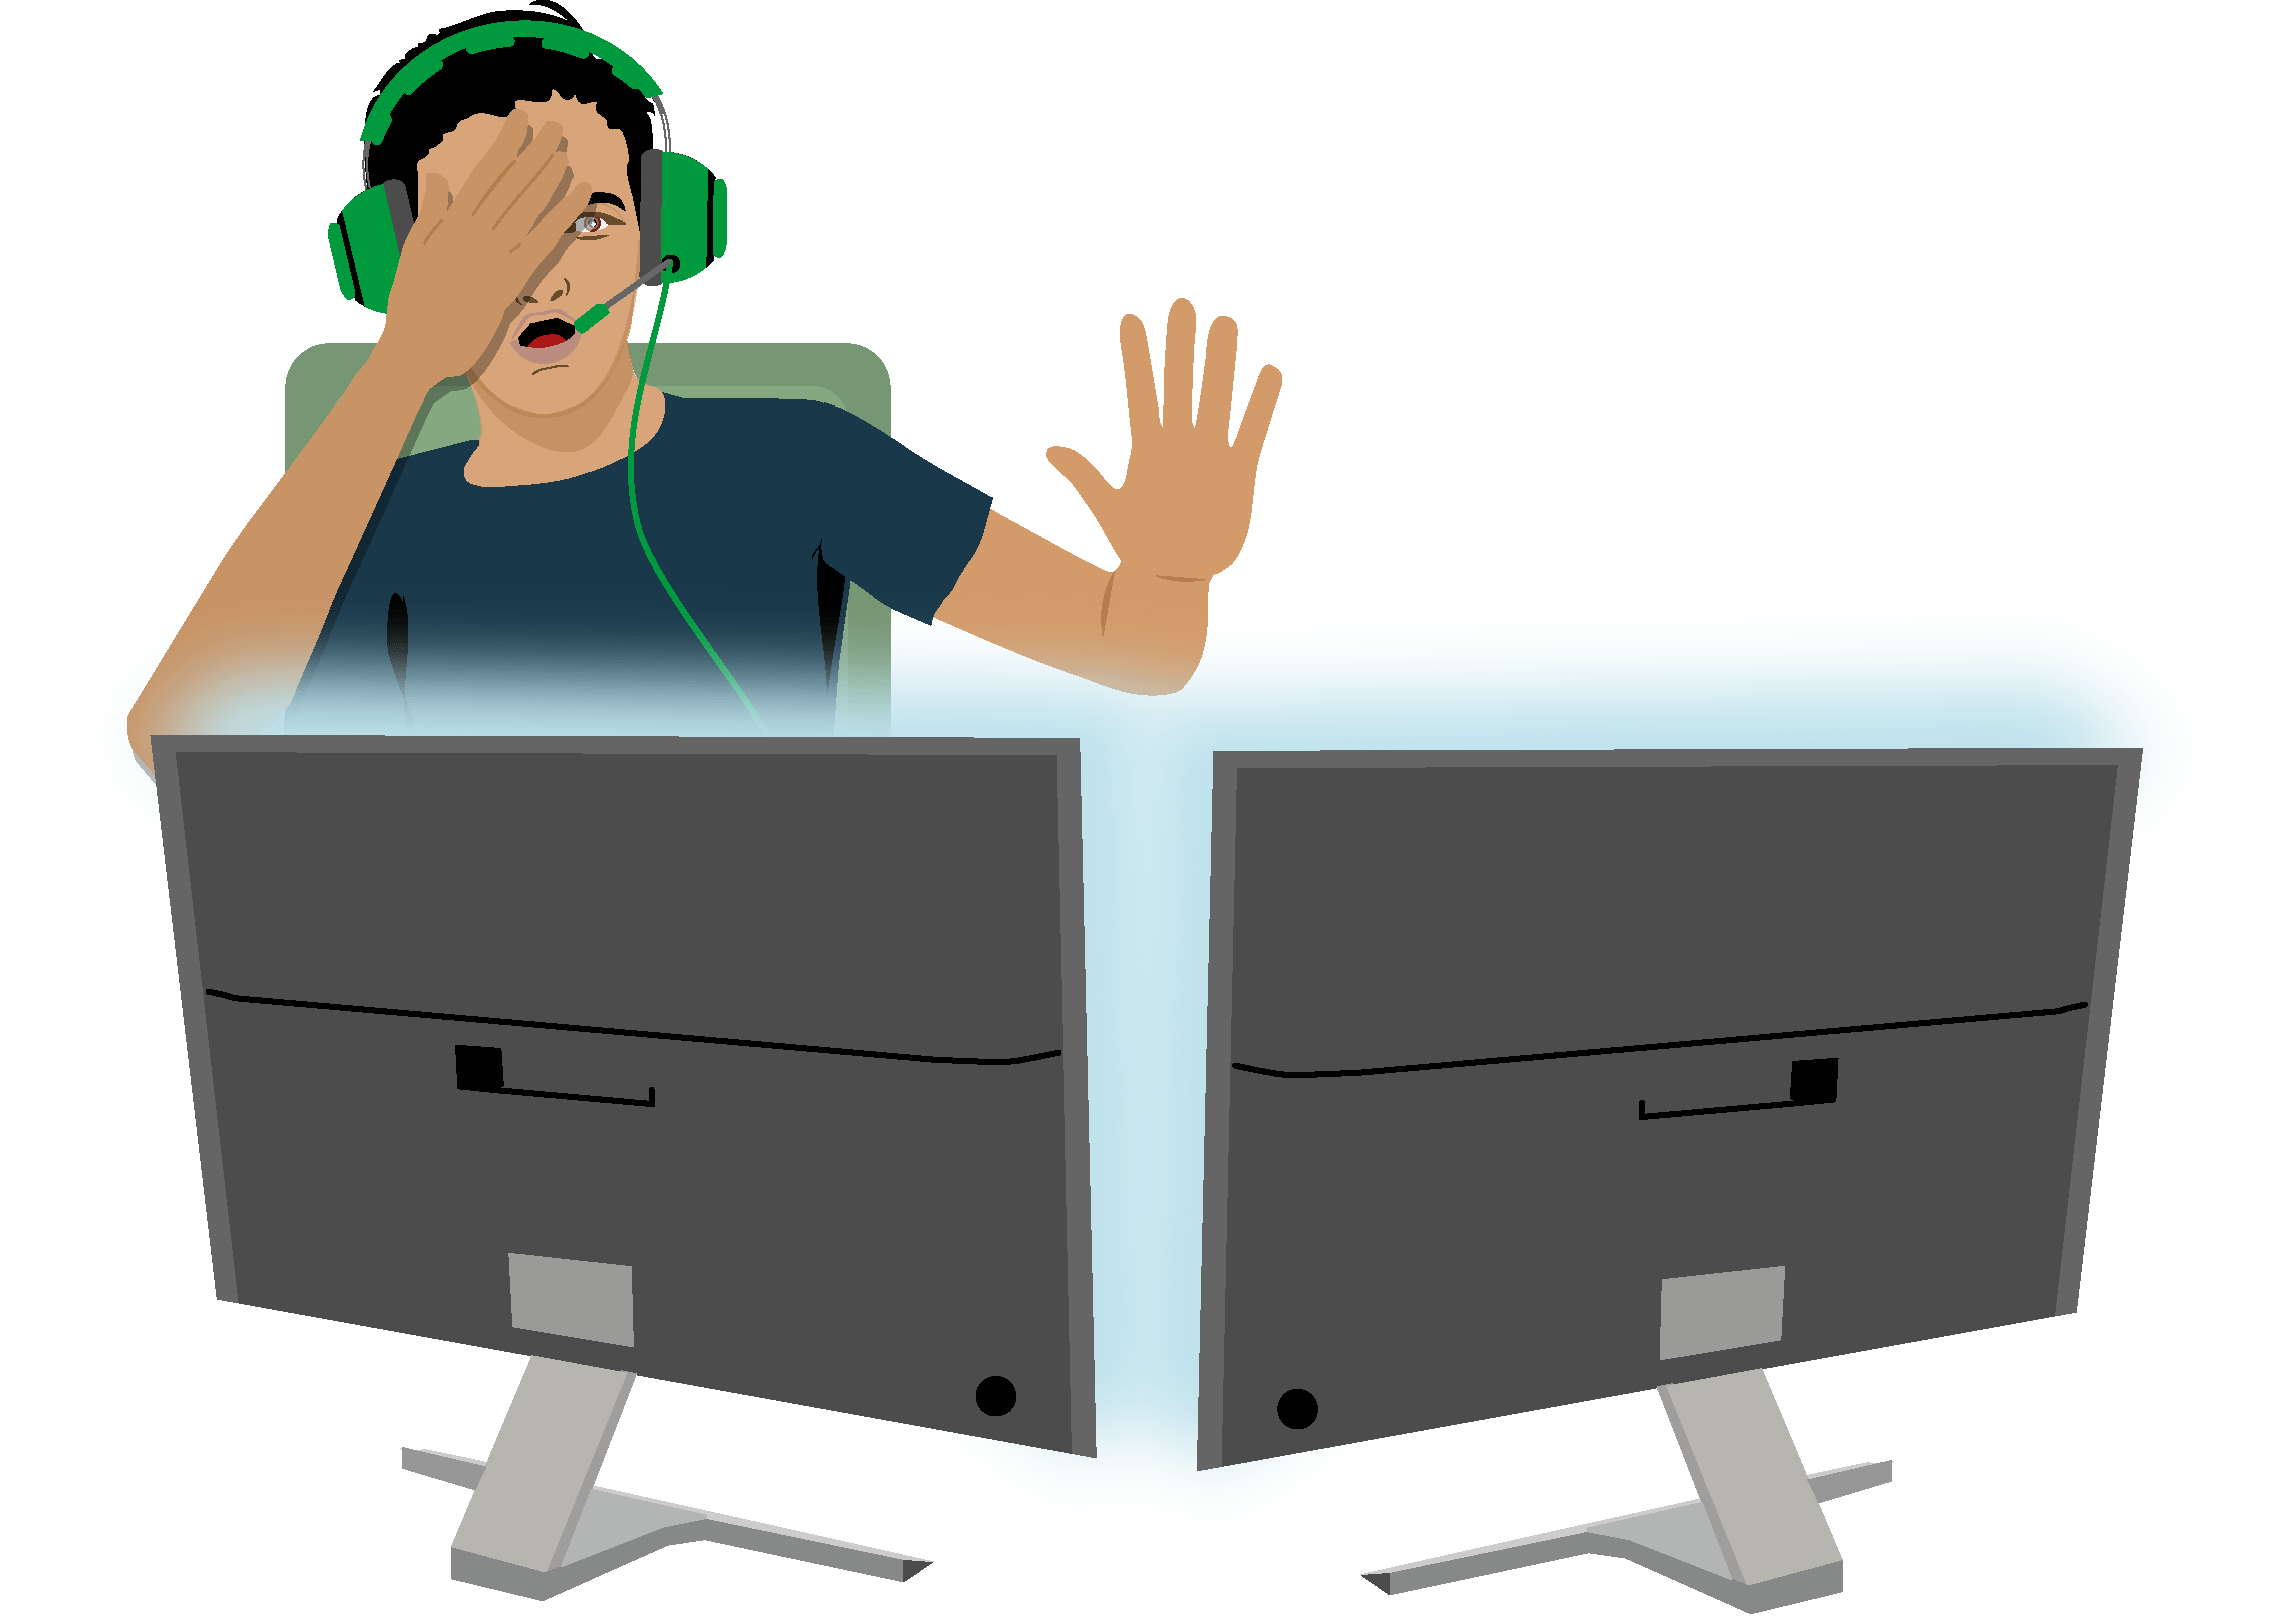 Ein Jugendlicher mit Gaming-Headset ist im Spiel am PC vertieft, erschreckt sich vor dem Bildschirminhalt und hält sich eine Hand vor Augen.